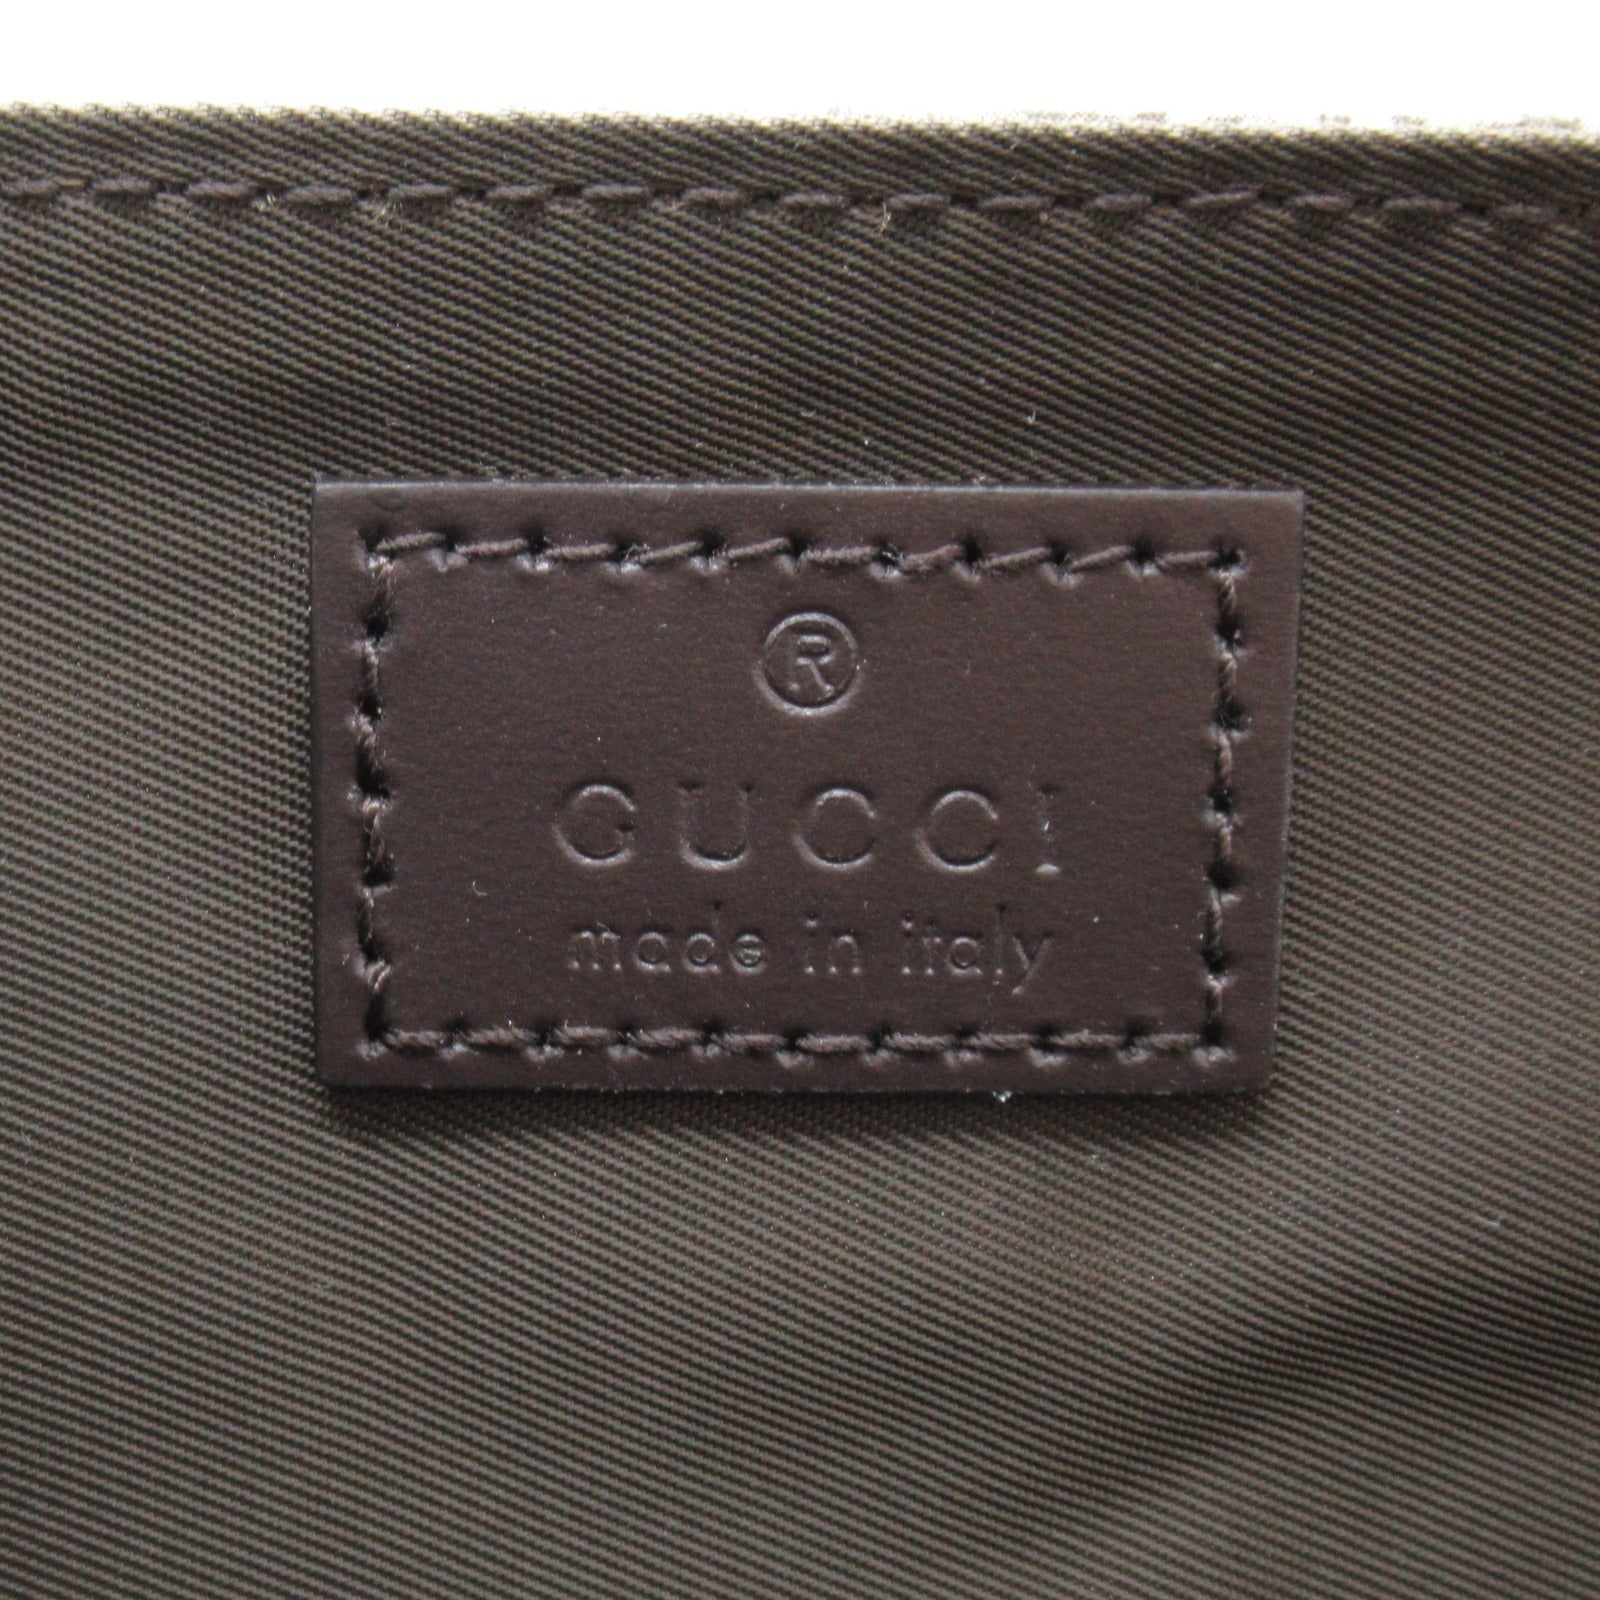 Gucci Mother's Bag Gucci Mother's Bag Gucci Mother's Bag Gucci Mother's Bag 211131KGDIG8588